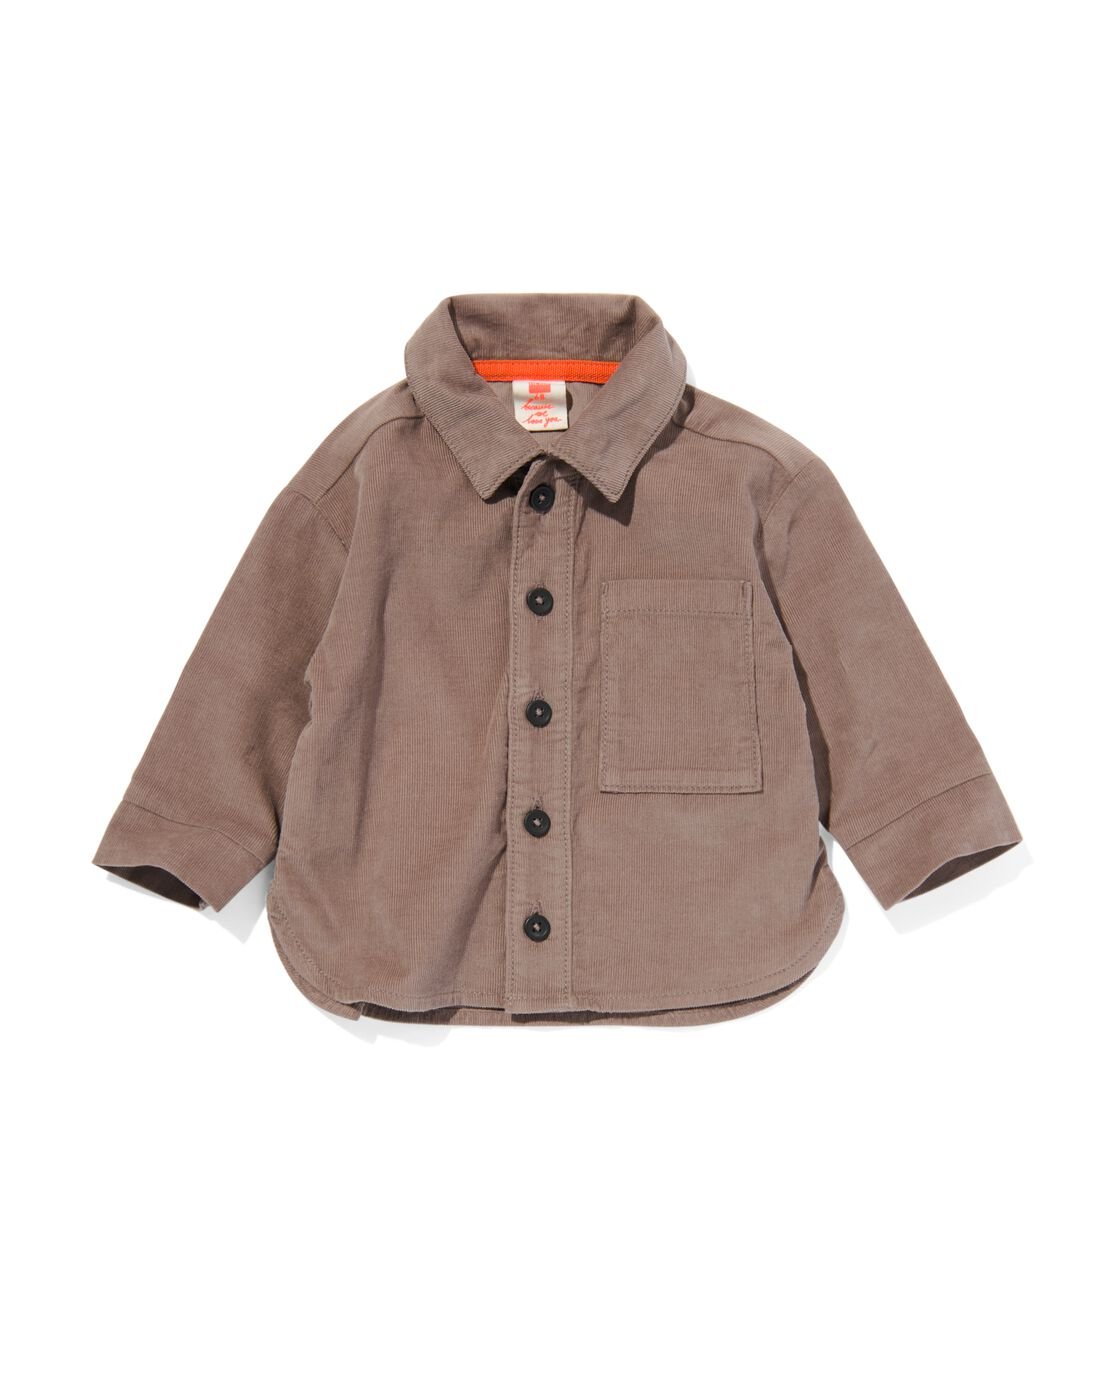 HEMA Baby Overhemd Rib Corduroy Bruin (bruin)